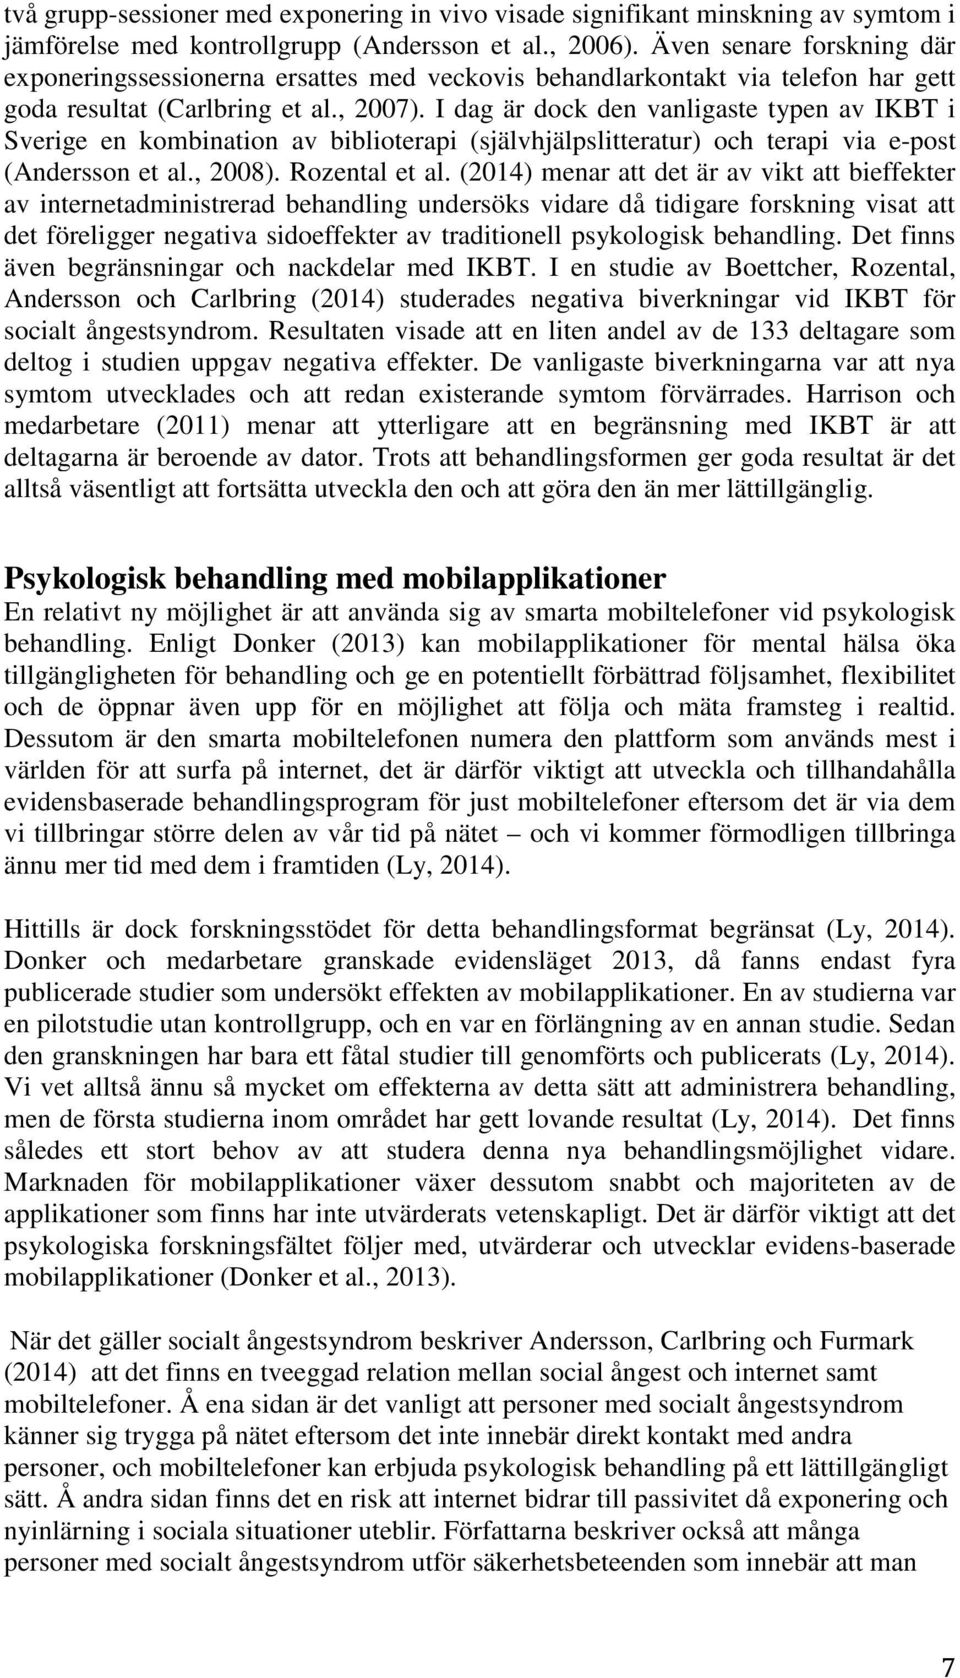 I dag är dock den vanligaste typen av IKBT i Sverige en kombination av biblioterapi (självhjälpslitteratur) och terapi via e-post (Andersson et al., 2008). Rozental et al.